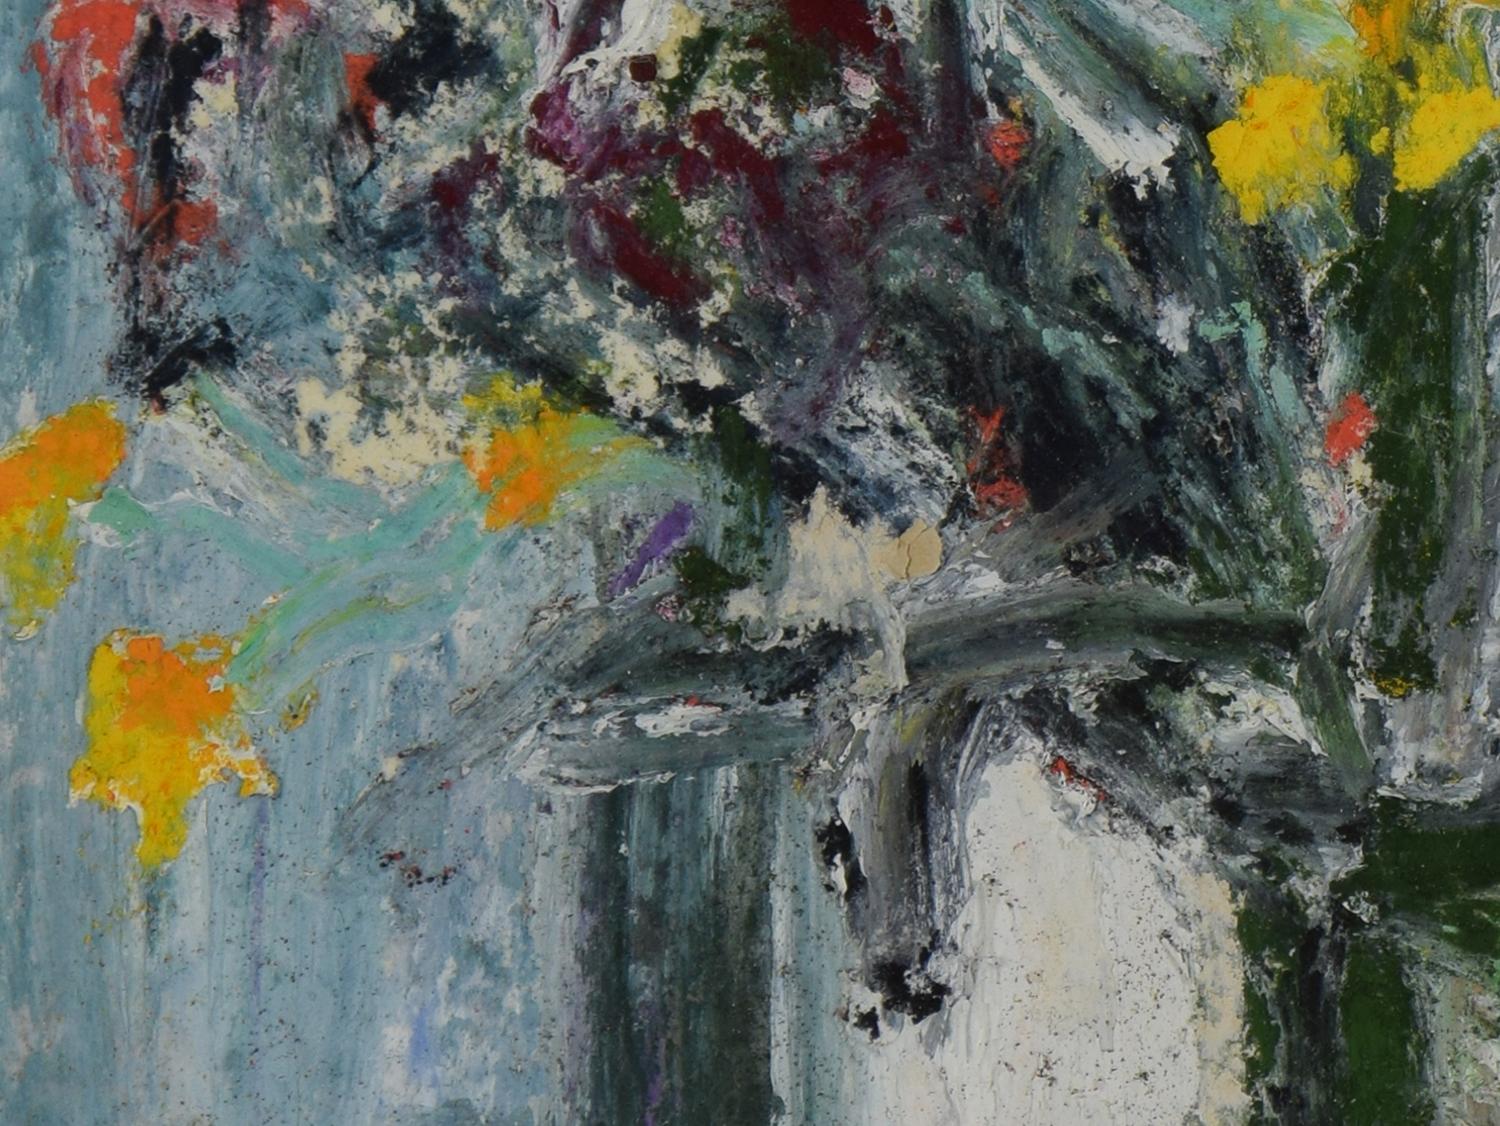 Fleurs par Hugues Pissarro dit Pomié (né en 1935)
Huile et pastel sur carton
26,5 x 17,8 cm (10 ³/₈ x 7 pouces)
Signé en bas à gauche H. Claude Pissarro et daté 1993 en bas à droite

Cette œuvre est accompagnée d'un certificat d'authenticité de